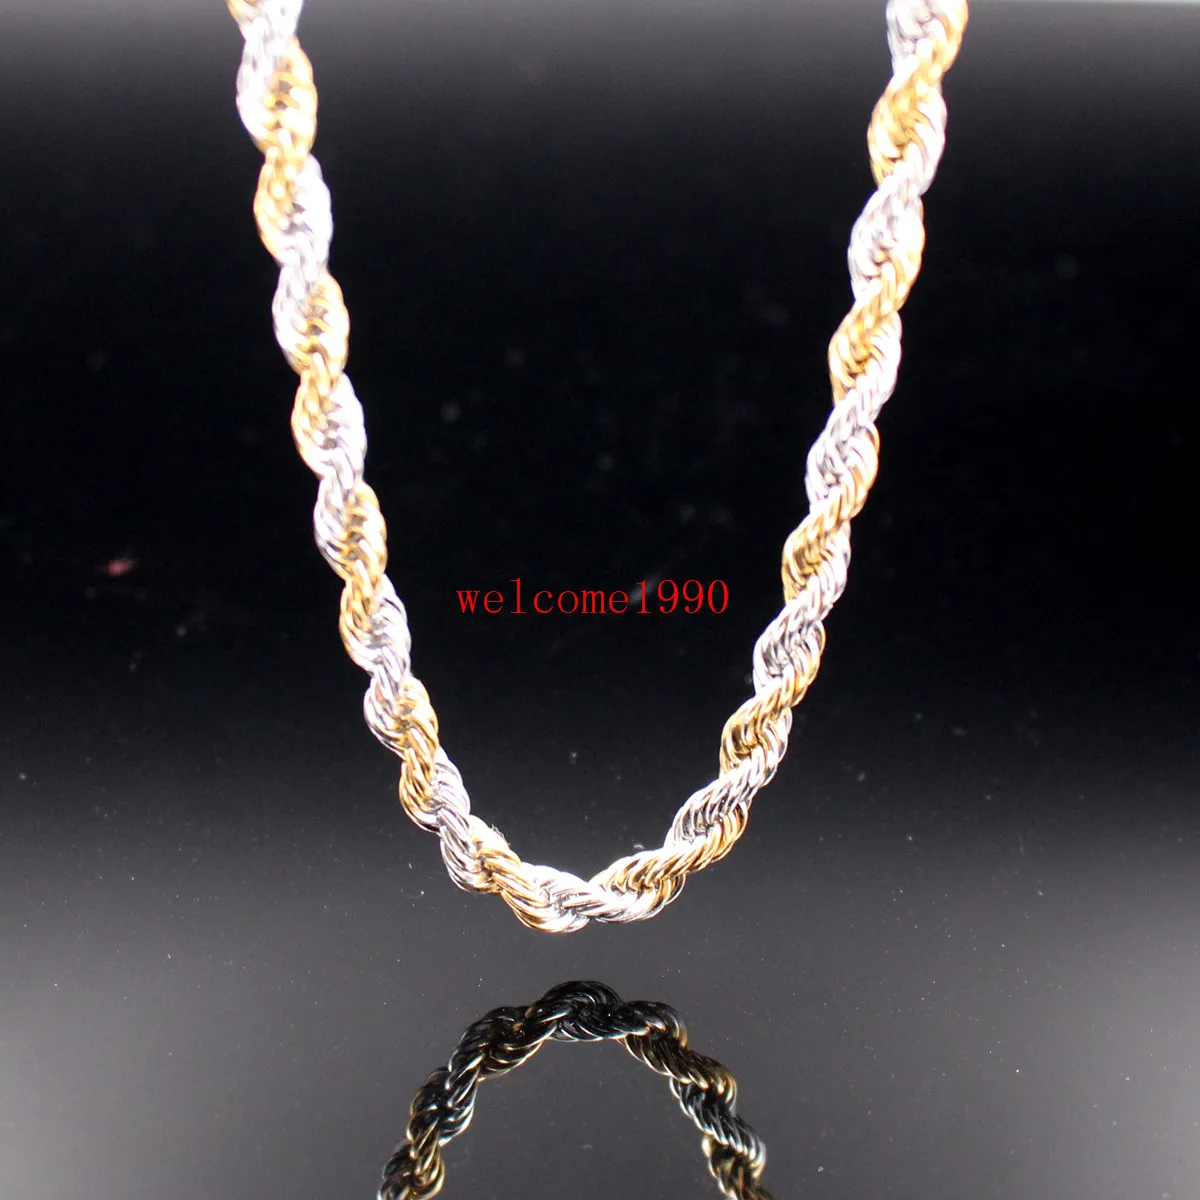 24 tum 5mm / 6mm guld silver rostfritt stål twisted singapore kedja rep kedja länk halsband kvinnor män helt nya